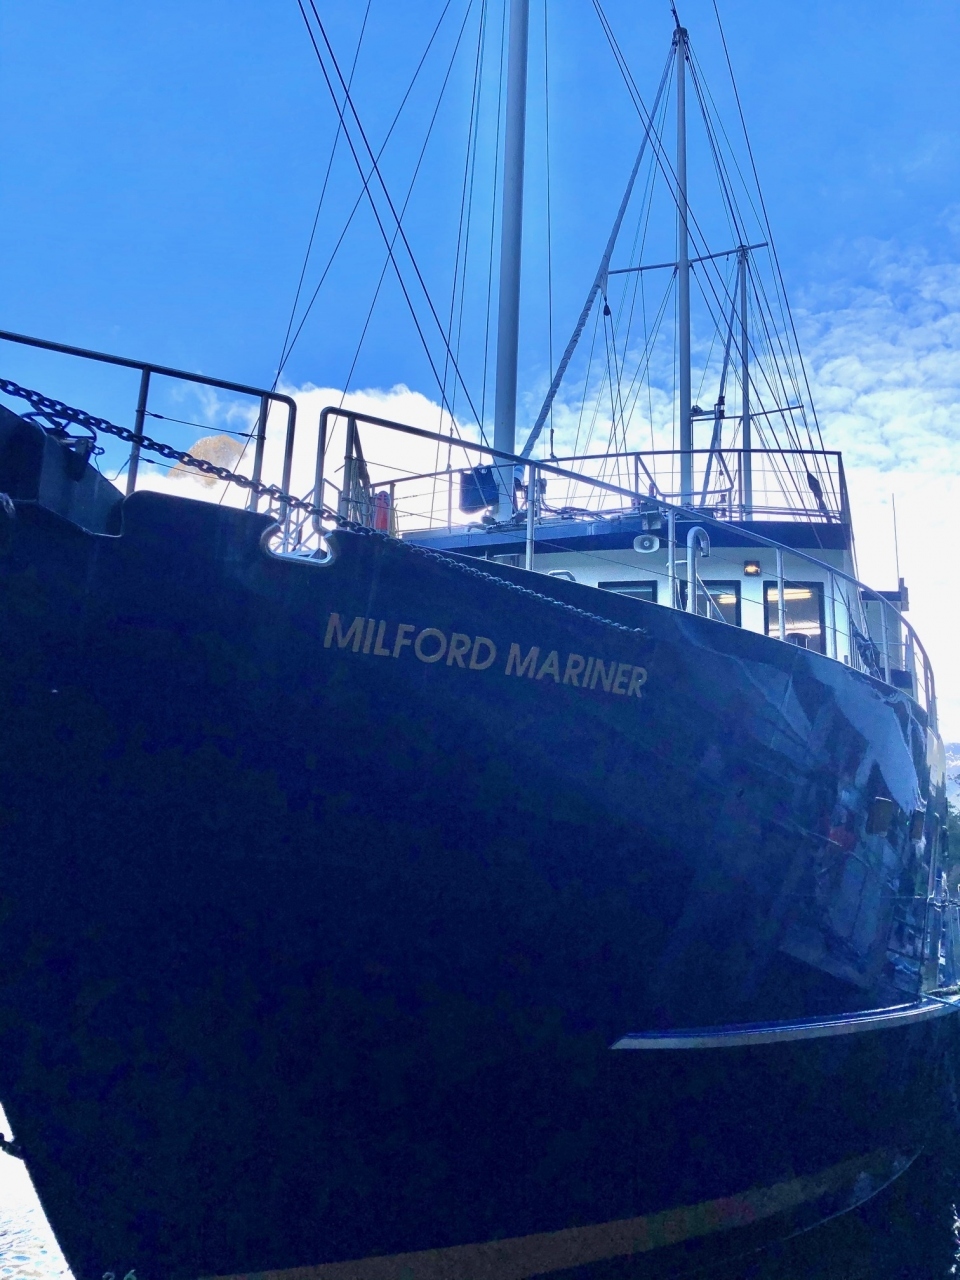 写真は、ミルフォード・マリナー号です。
このクルーズ船でミルフォード・サウンドで船中1泊の体験をしました。
この1泊クルーズは事前予約が必要です。
私たちは、クイーンズタウン旅行のプランを立て始めた10ケ月ほど前に現地のRealJourneys社という旅行会社を通じてネット予約しました。
NZ$510/1人です。二人で7万円ほどです。
11/6（水）の午後4時半に出帆し、翌朝の9時頃に戻ります。
代金には船上のディナー代は含まれていますが、ワインなどの飲み物は現金払いとなります。カードは使えません。

まずは、クイーンズタウンのホテルをレンタカーで出発です。GoogleMapによると、300キロ弱の道のりで休憩なしのドライブで3時間39分と表示されます。朝食を済ませて、ほどなく出発し観光しながら目的地を目指しました。

ここでアドバイスします。
現地で車を運転する際は、ナビゲーションが必要です。スマホのナビが使えると大変便利なのは言うまでもありません。
おすすめは、maps.meというアプリです。特徴は地図データを予めスマホ本体にダウンロードして使用できるところです。出発前にWiFi環境のあるうちに地図データをダウンロードしておけば、現地でネット環境がなくてもナビとして利用できます。ロータリー交差点の出口まで支持してくれるたいへん賢いものです。しかも無料で利用できるのは助かります。
加えて、GoogleMapにも、「オフラインマップ」という機能があり、予め地図データをダウンロードして利用できることを最近知りました。今回は、その機能も使ってみましたが、全くそん色なく利用できることがわかりました。